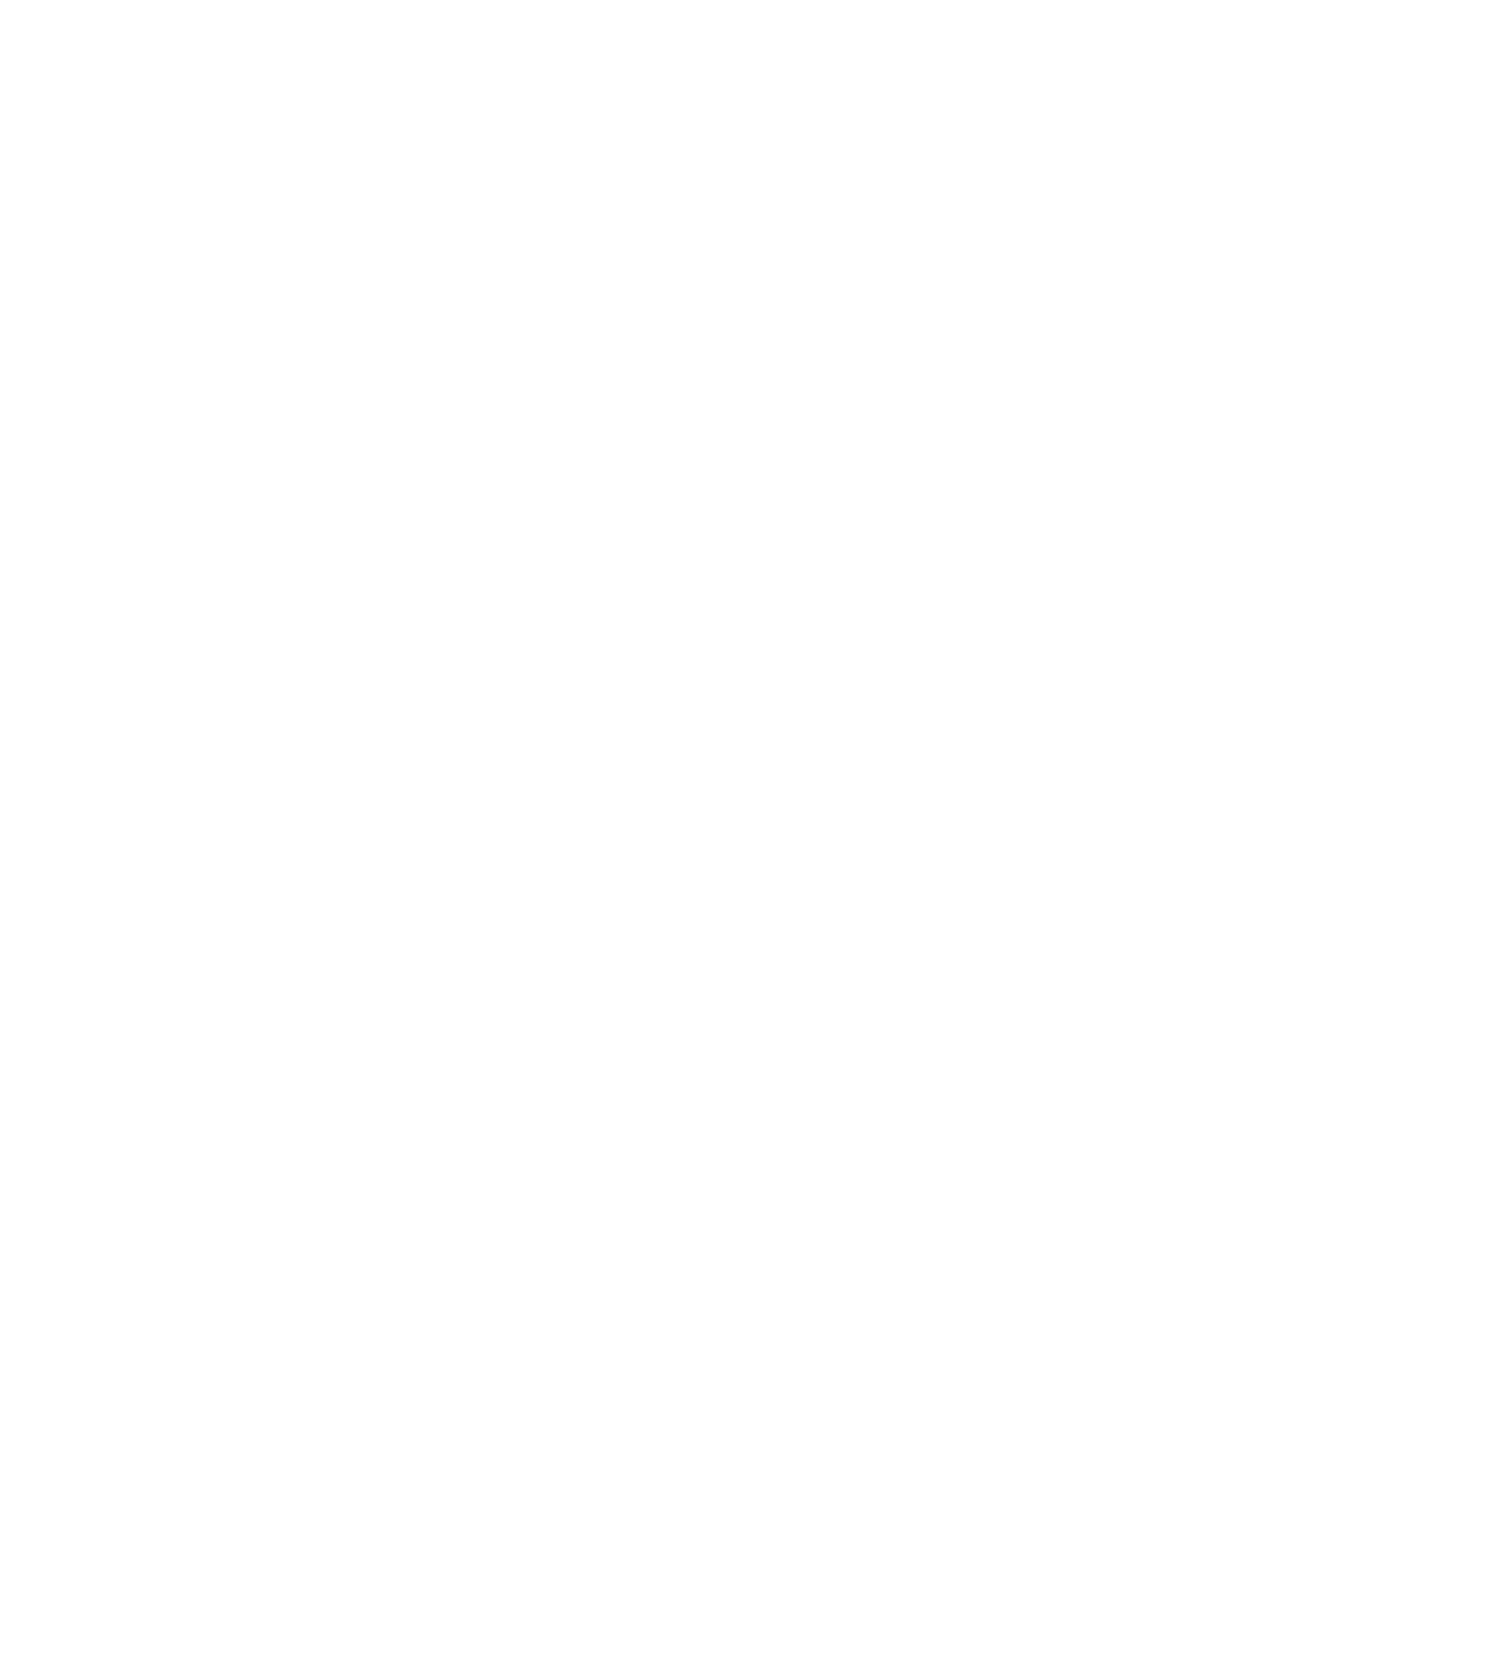 AquaSsage